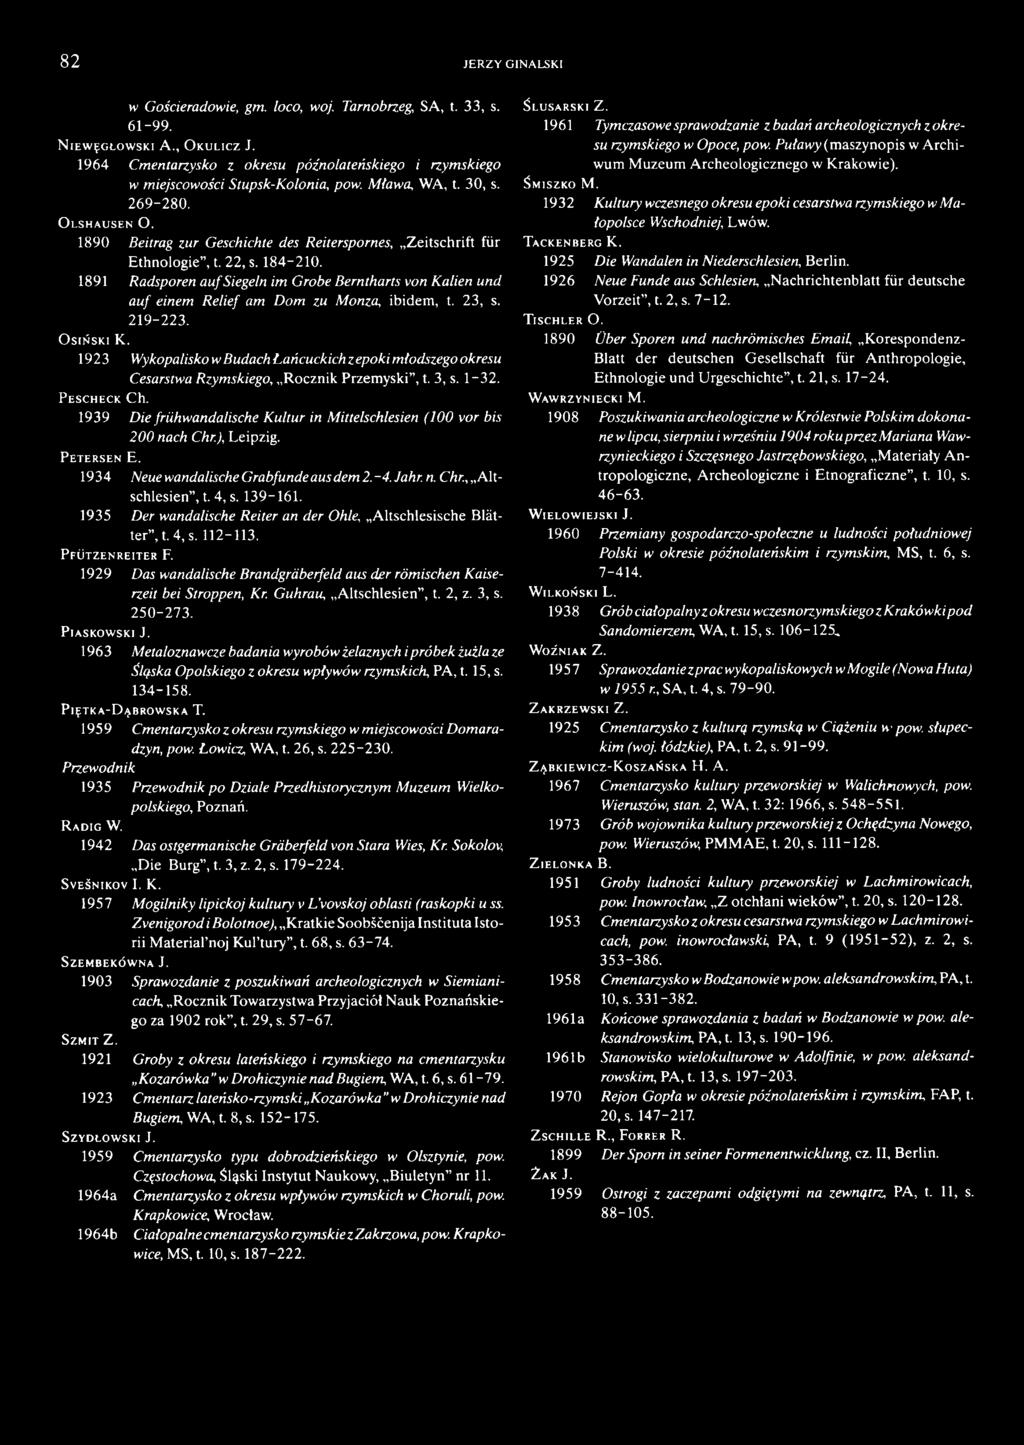 1939 Die frühwandalische Kultur in Mittelschlesien (100 vor bis 200 nach Chr.) Leipzig. P e t e r s e n E. 1934 Neue wandalische Grabfunde aus dem 2.-4. Jahr. n. Chr., Altschlesien, t. 4, s. 139-161.